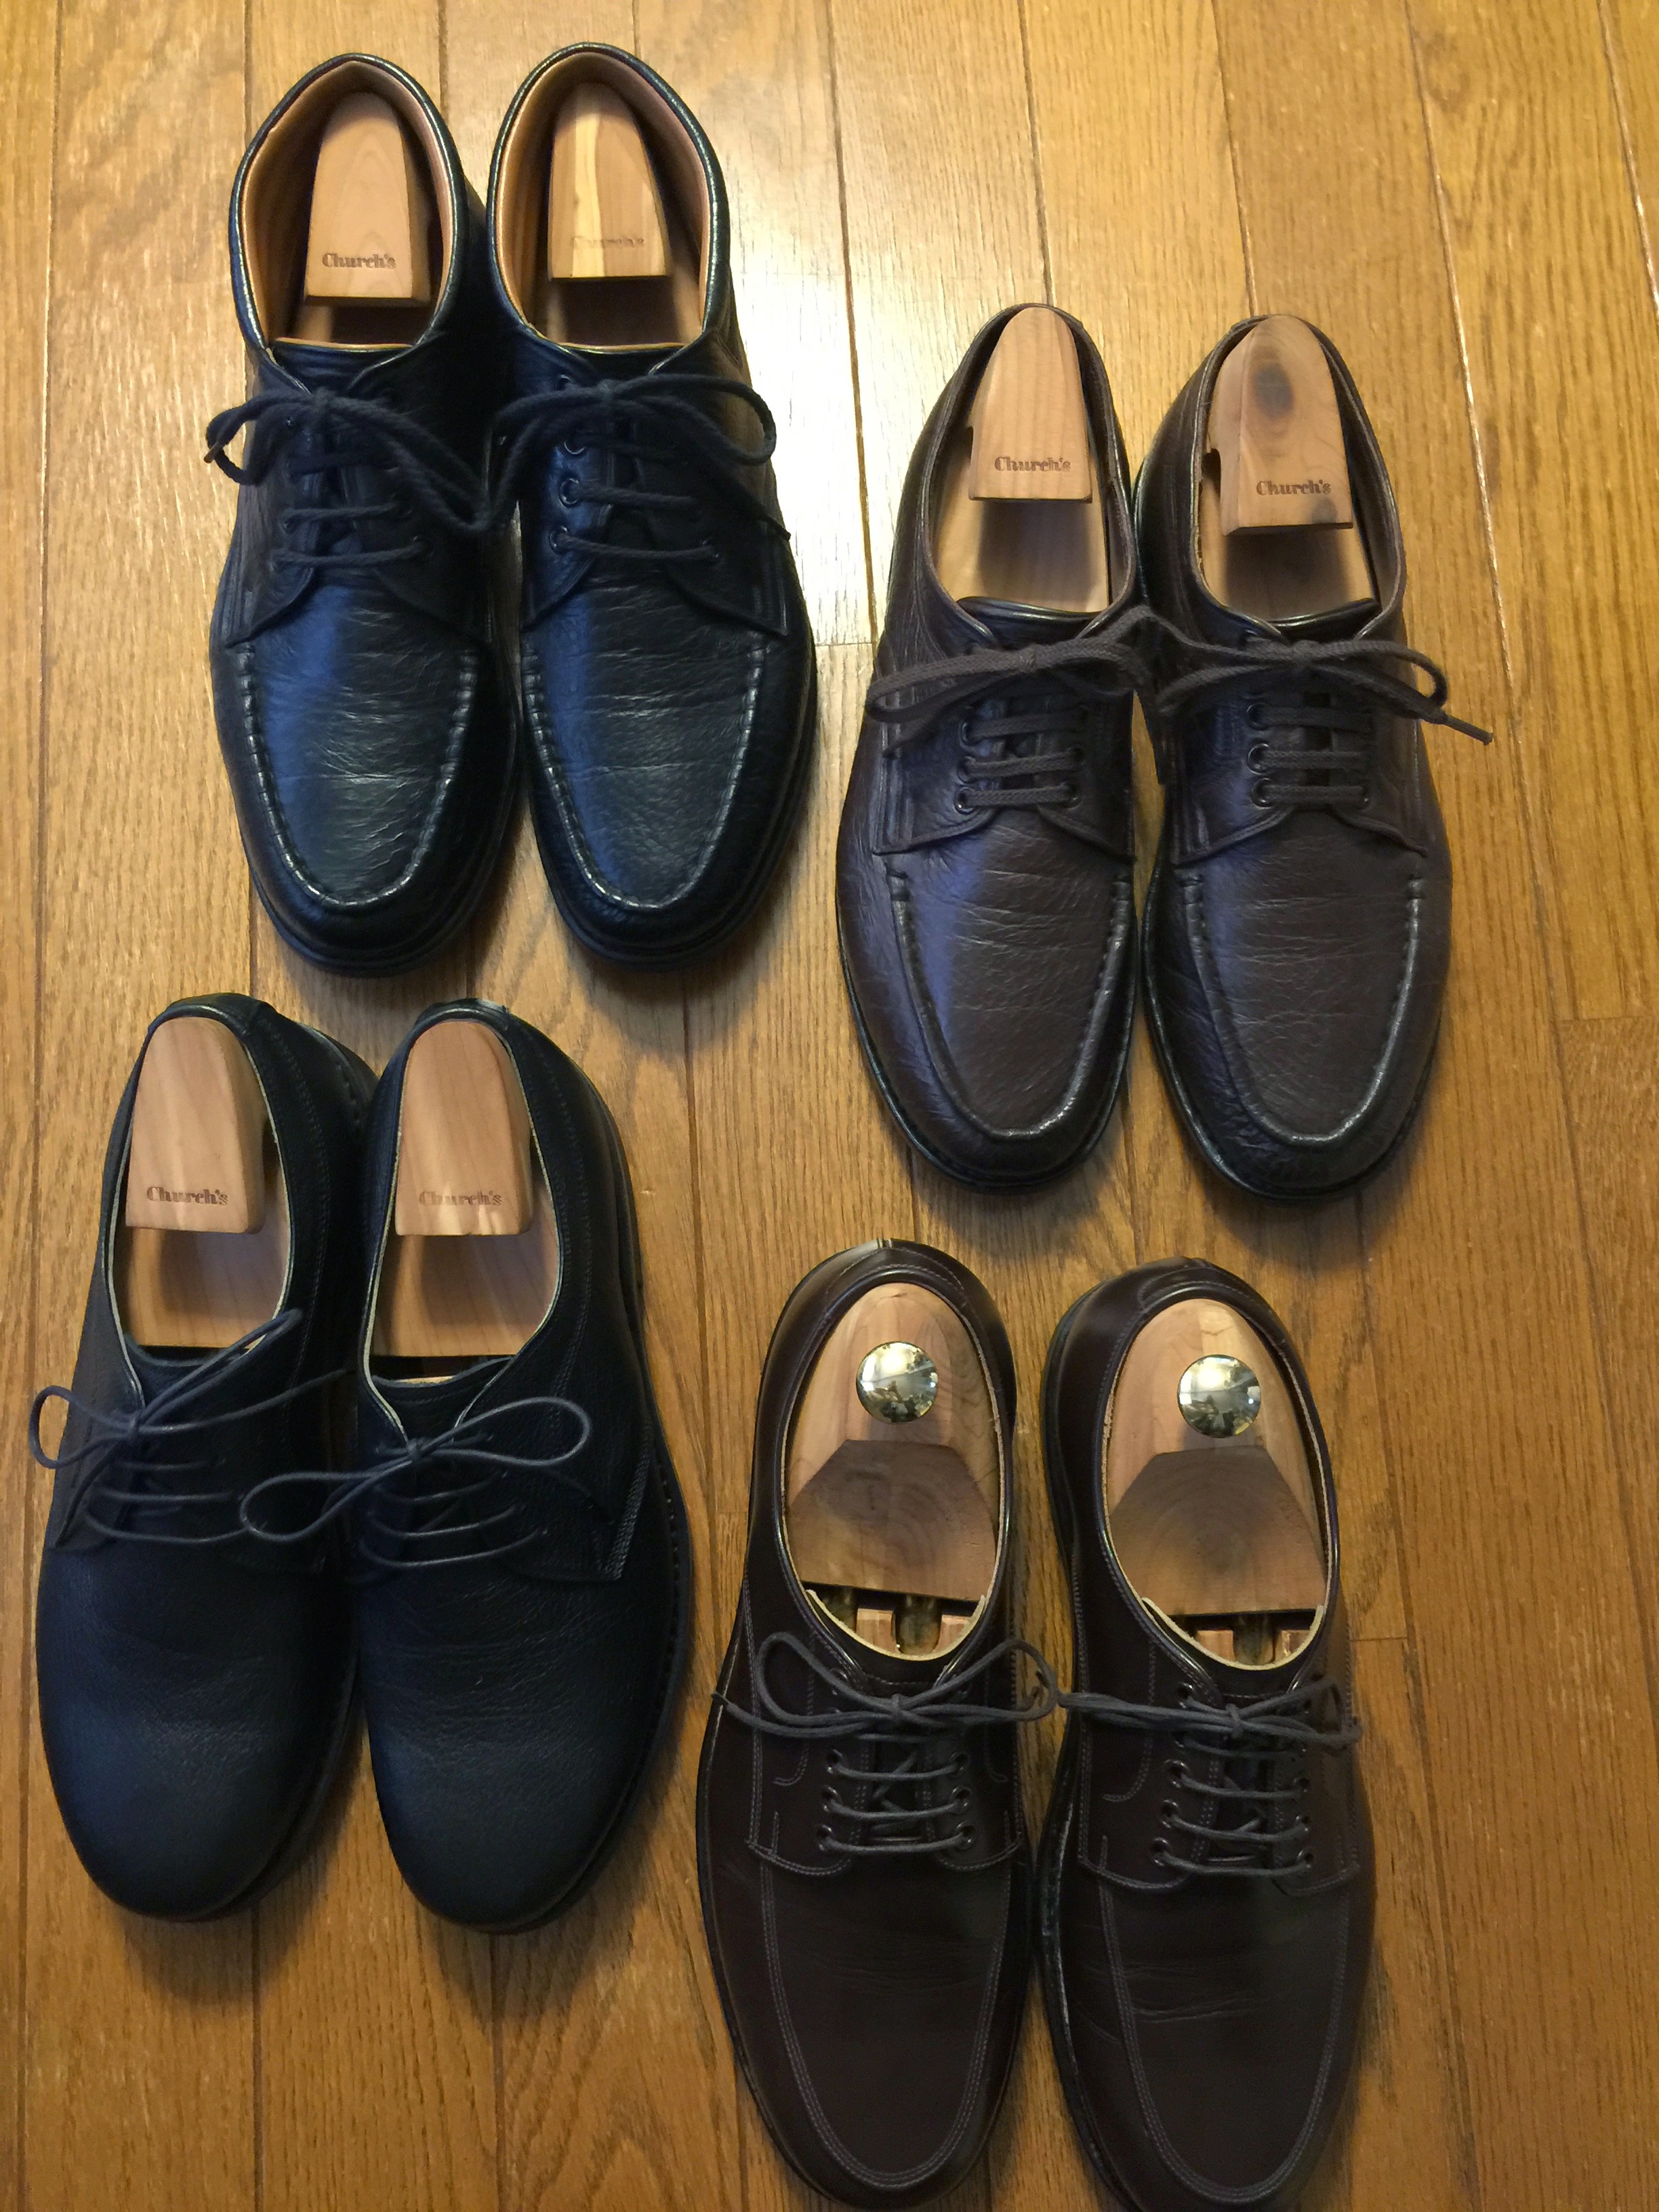 0632-201502_Sanko Shoes_07